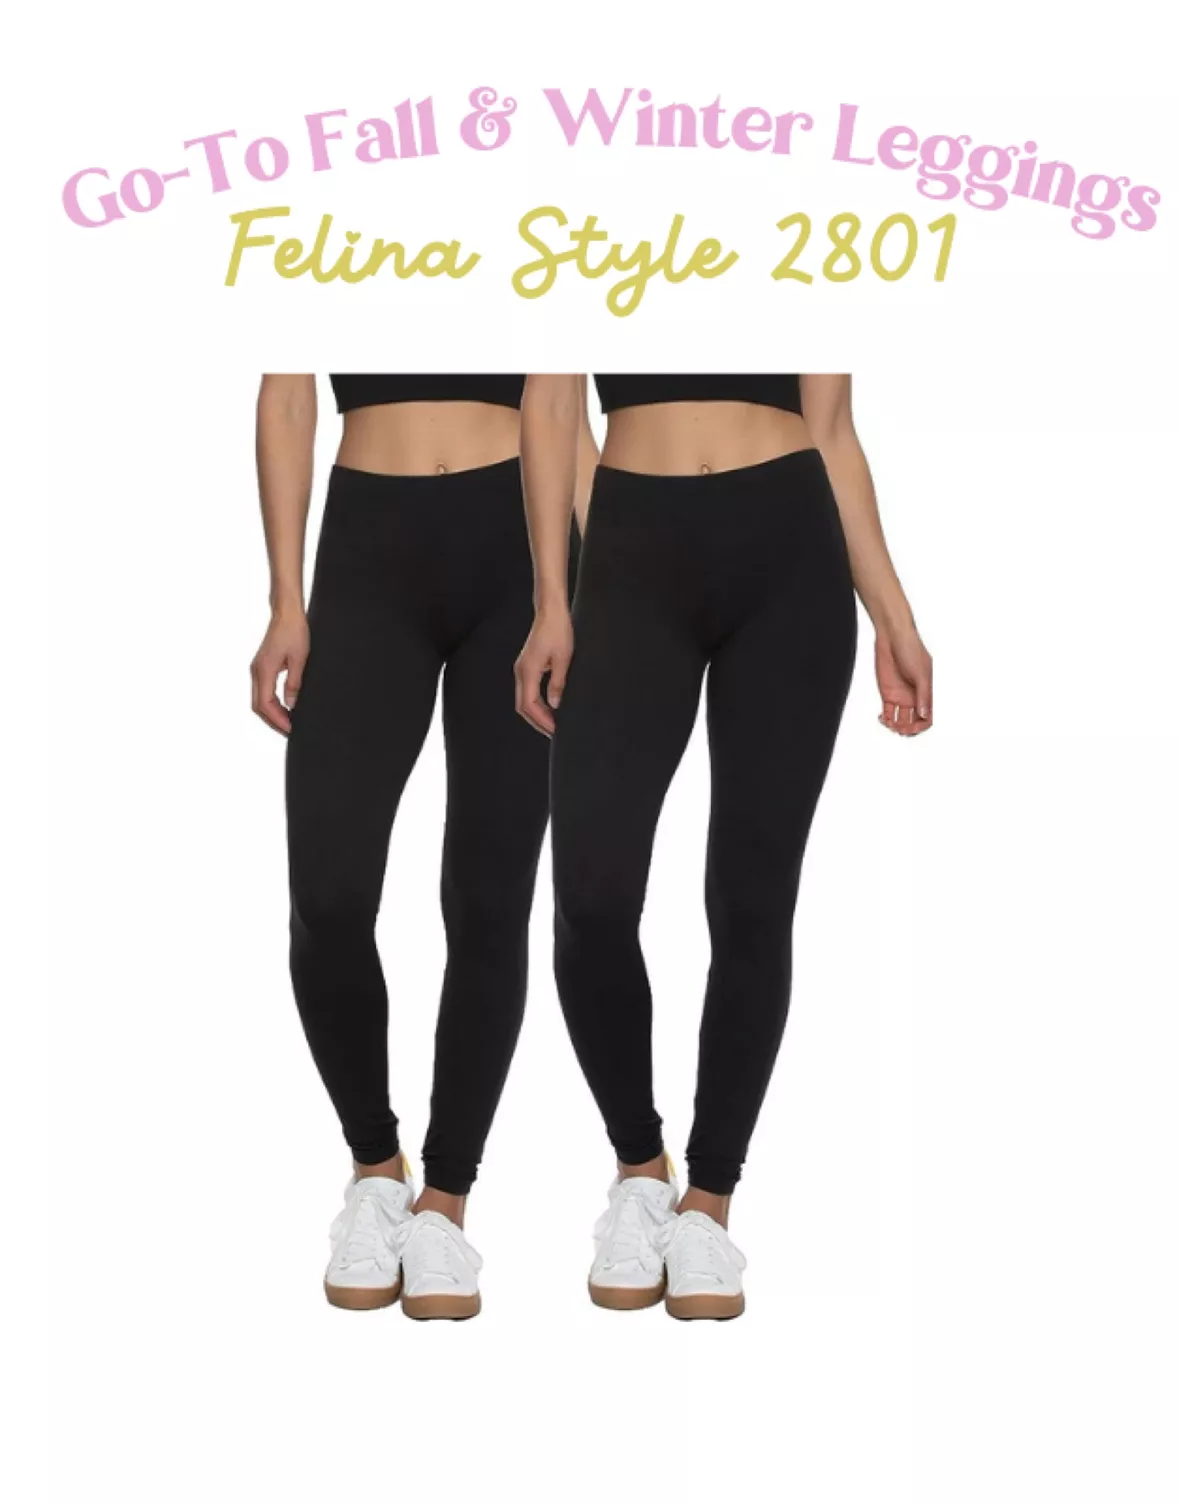 Felina Velvety Soft Leggings for Women - Style 2801, Lightweight